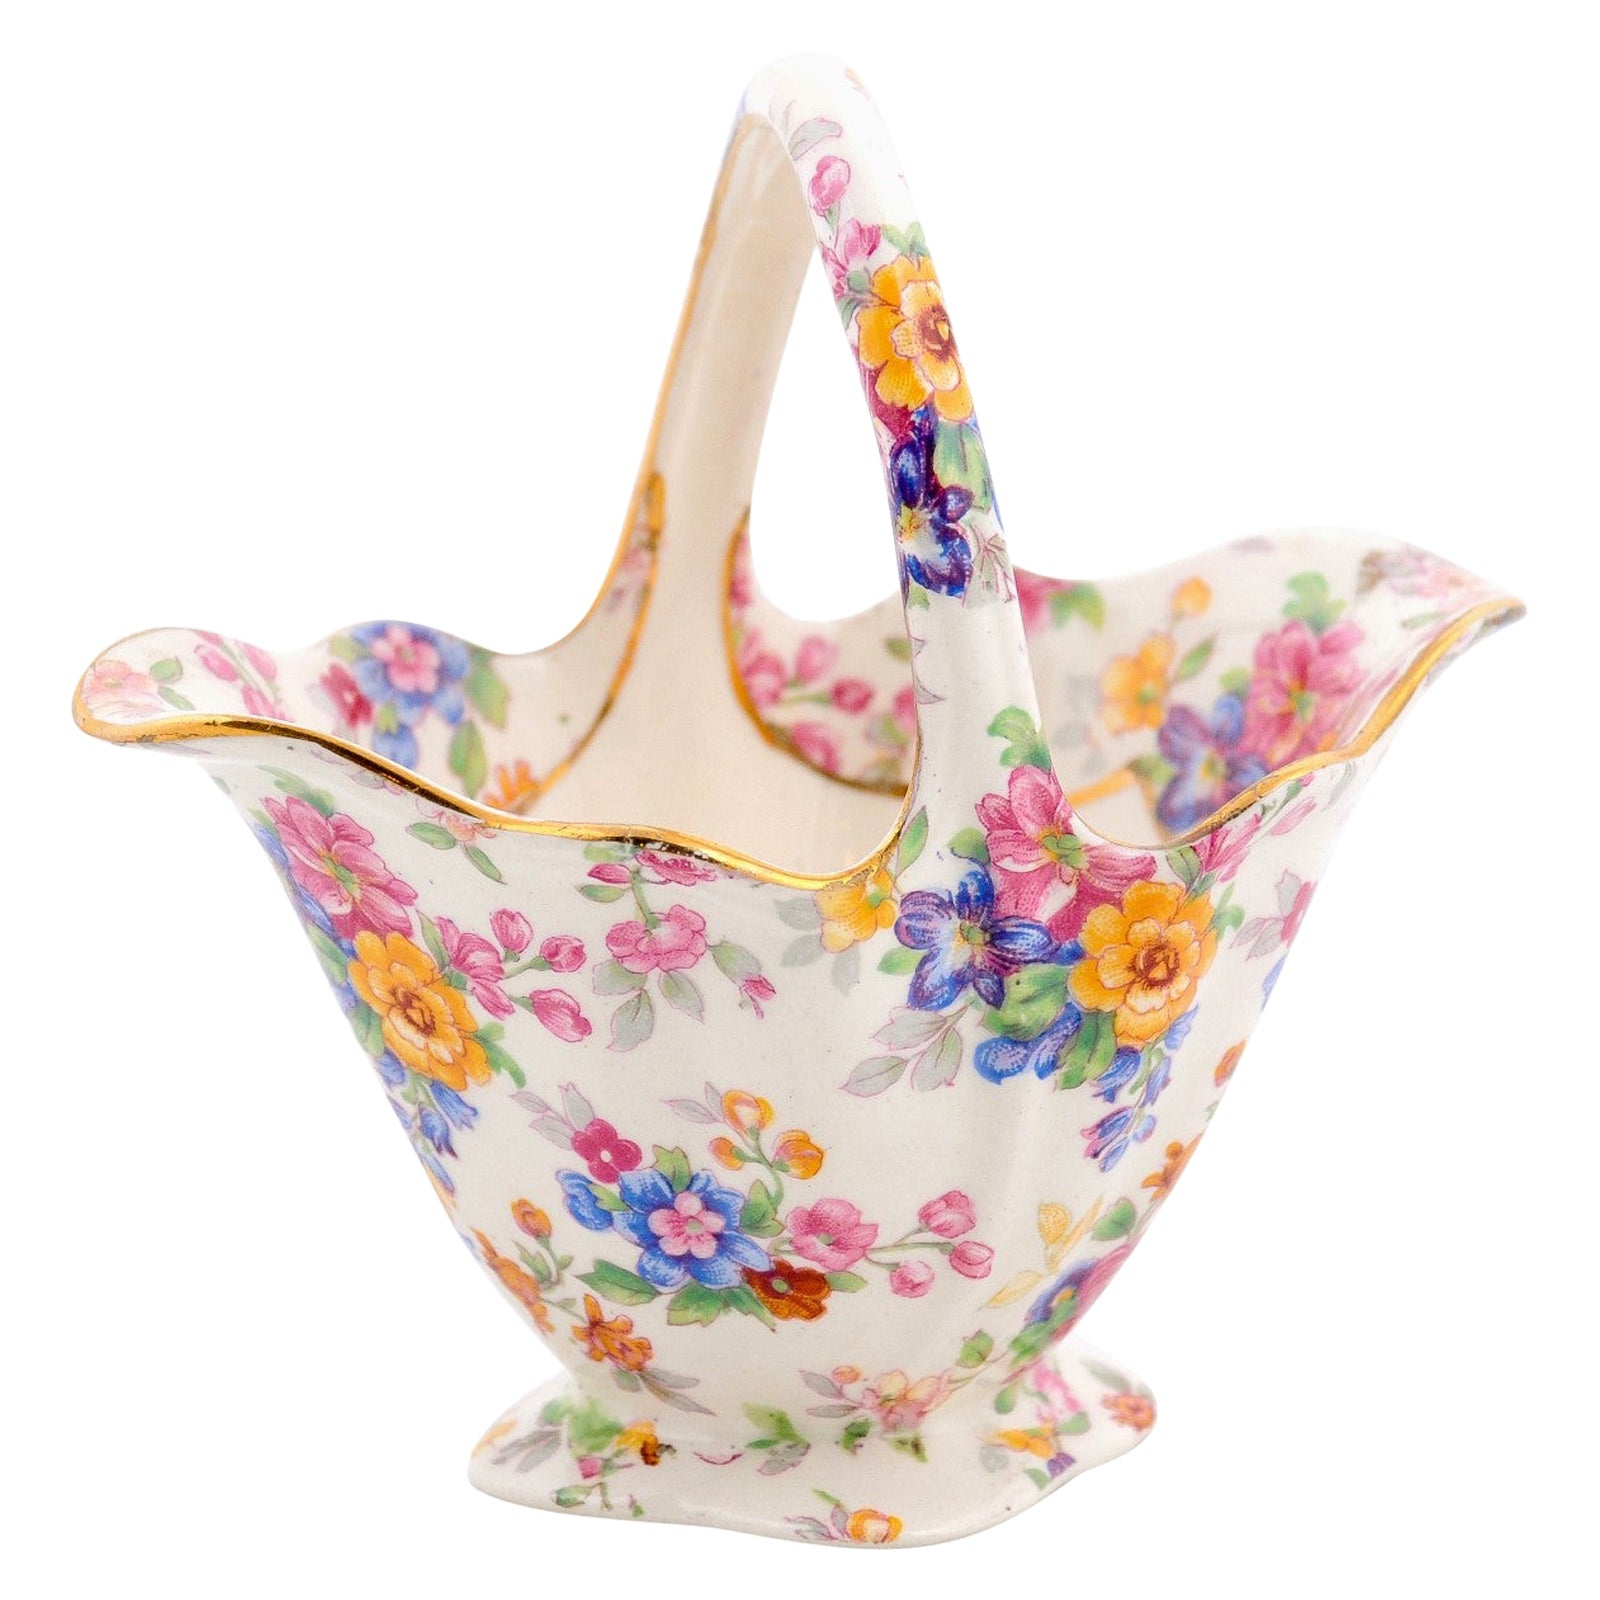 English 1952 Vintage Royal Winton Porcelain Basket with Colorful Floral Décor